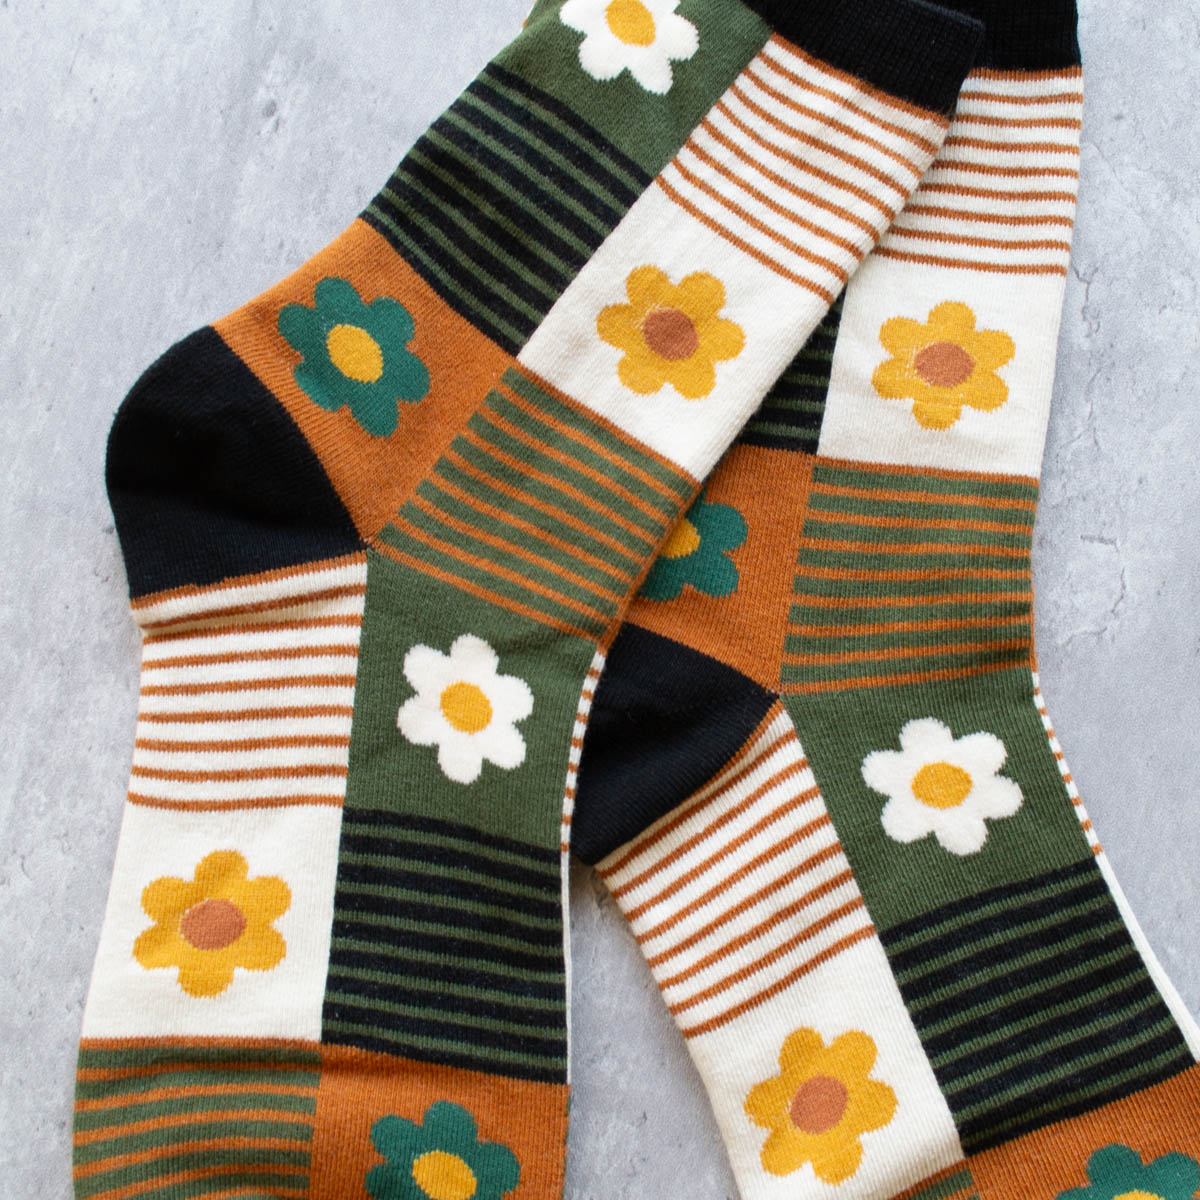 Daisies & Stripes Socks - 3 Colorways